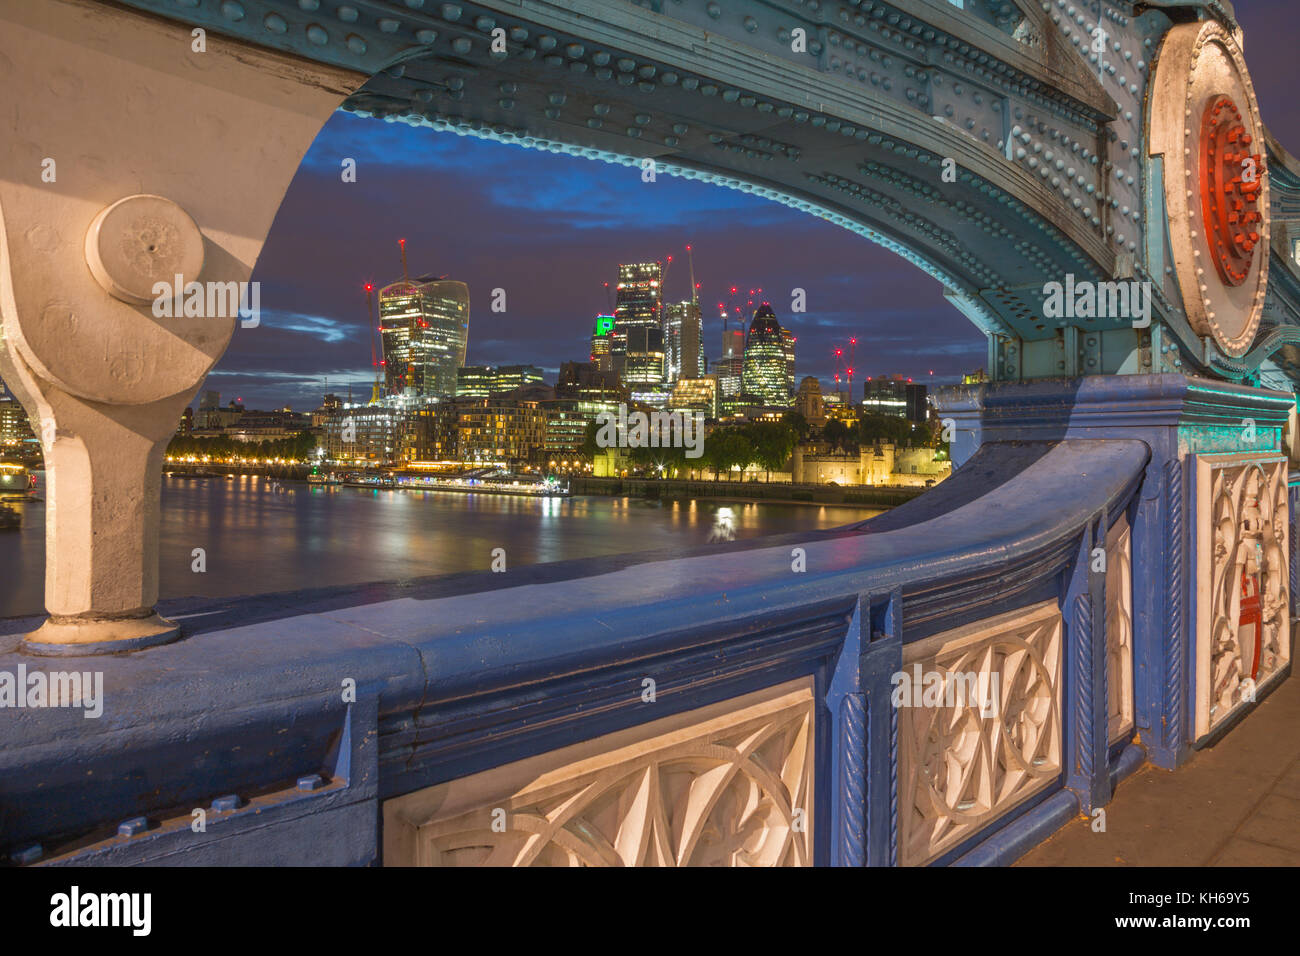 Londres - le détail de la construction métallique de la tour promise et gratte-ciel du centre au crépuscule. Banque D'Images